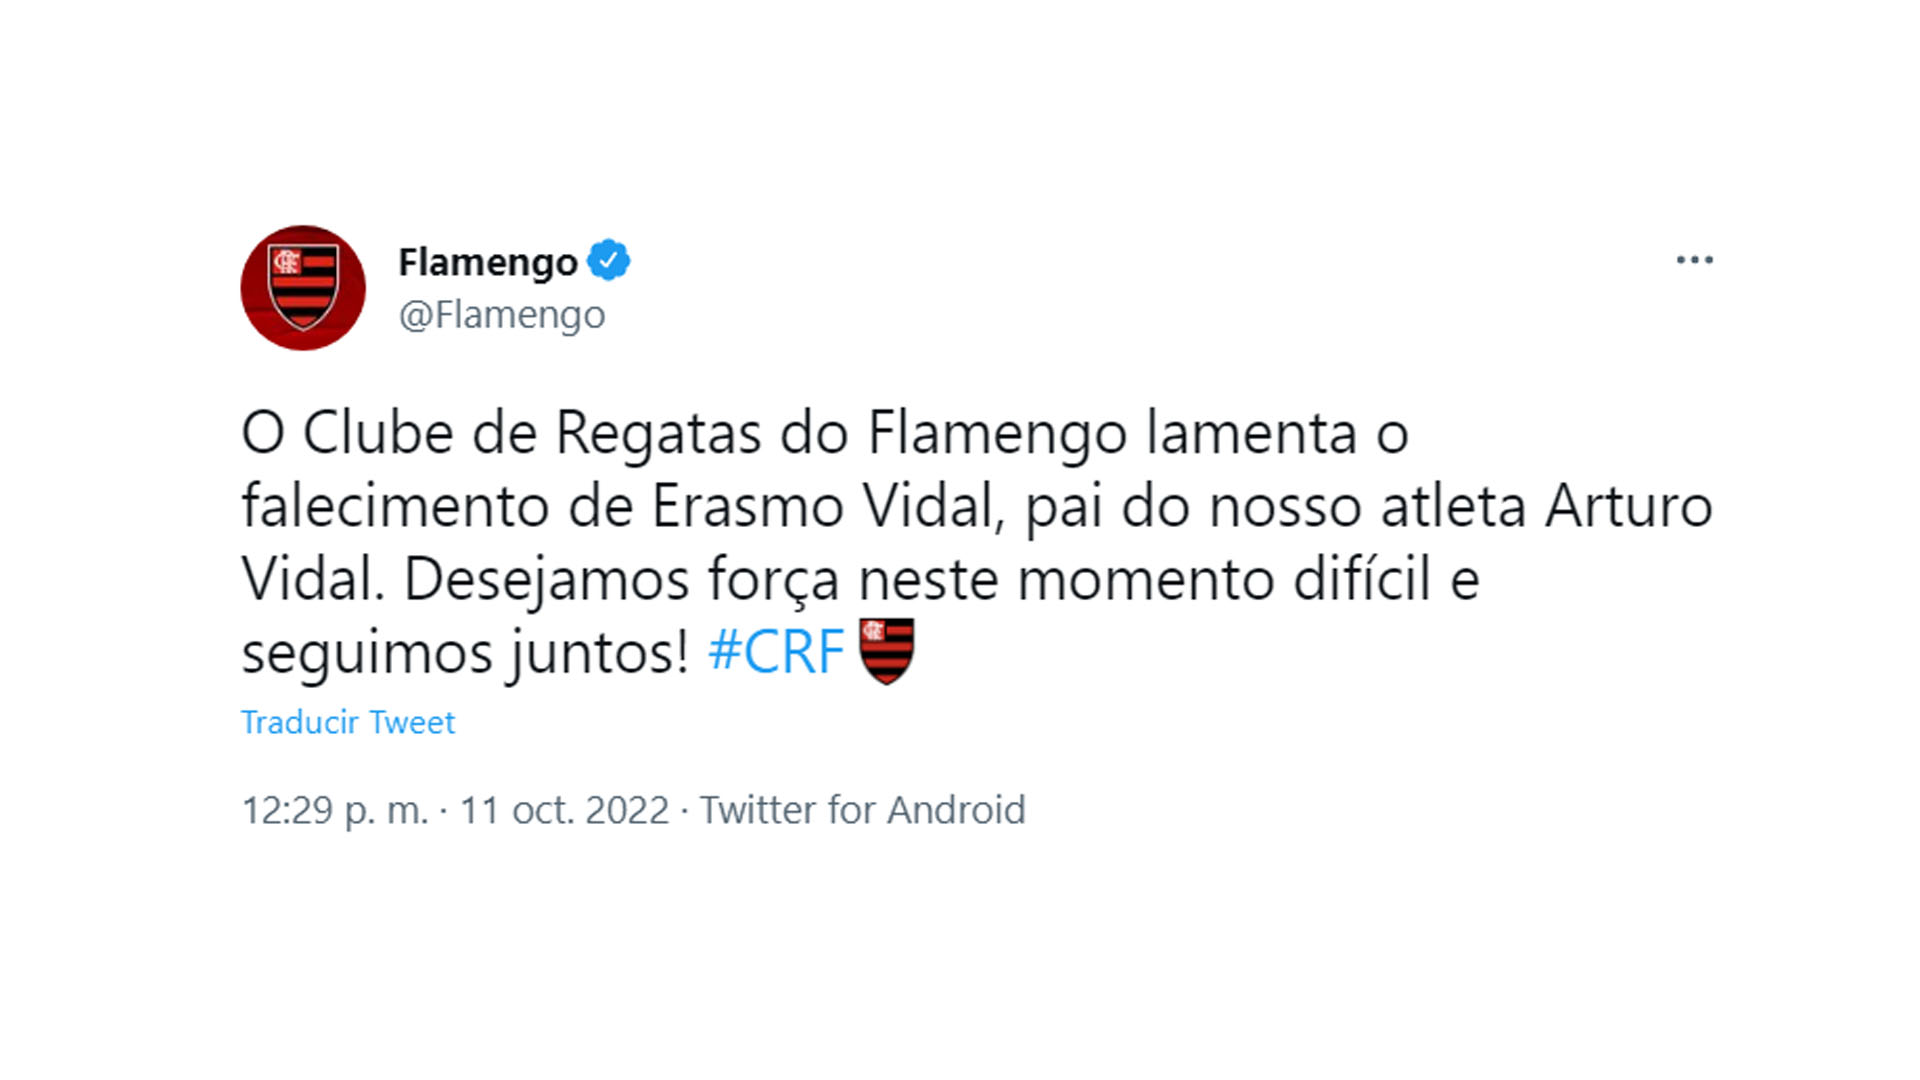 "El Clube de Regatas do Flamengo lamenta el fallecimiento de Erasmo Vidal, padre de nuestro deportista Arturo Vidal. ¡Les deseamos fuerza en este momento tan difícil y seguir juntos! #CRF"